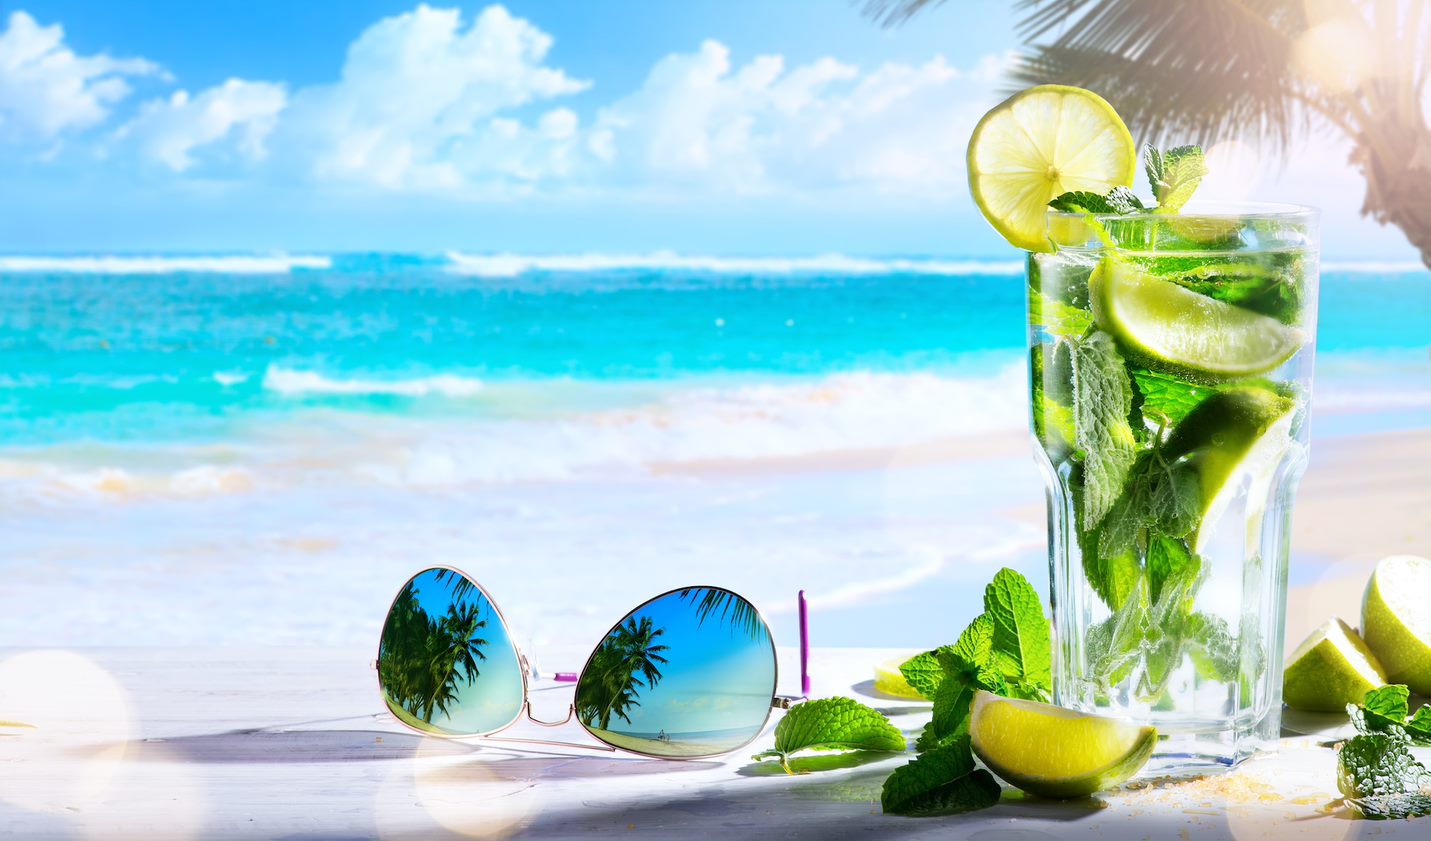 Playa de arena blanca tomando una refrescante bebida al sol